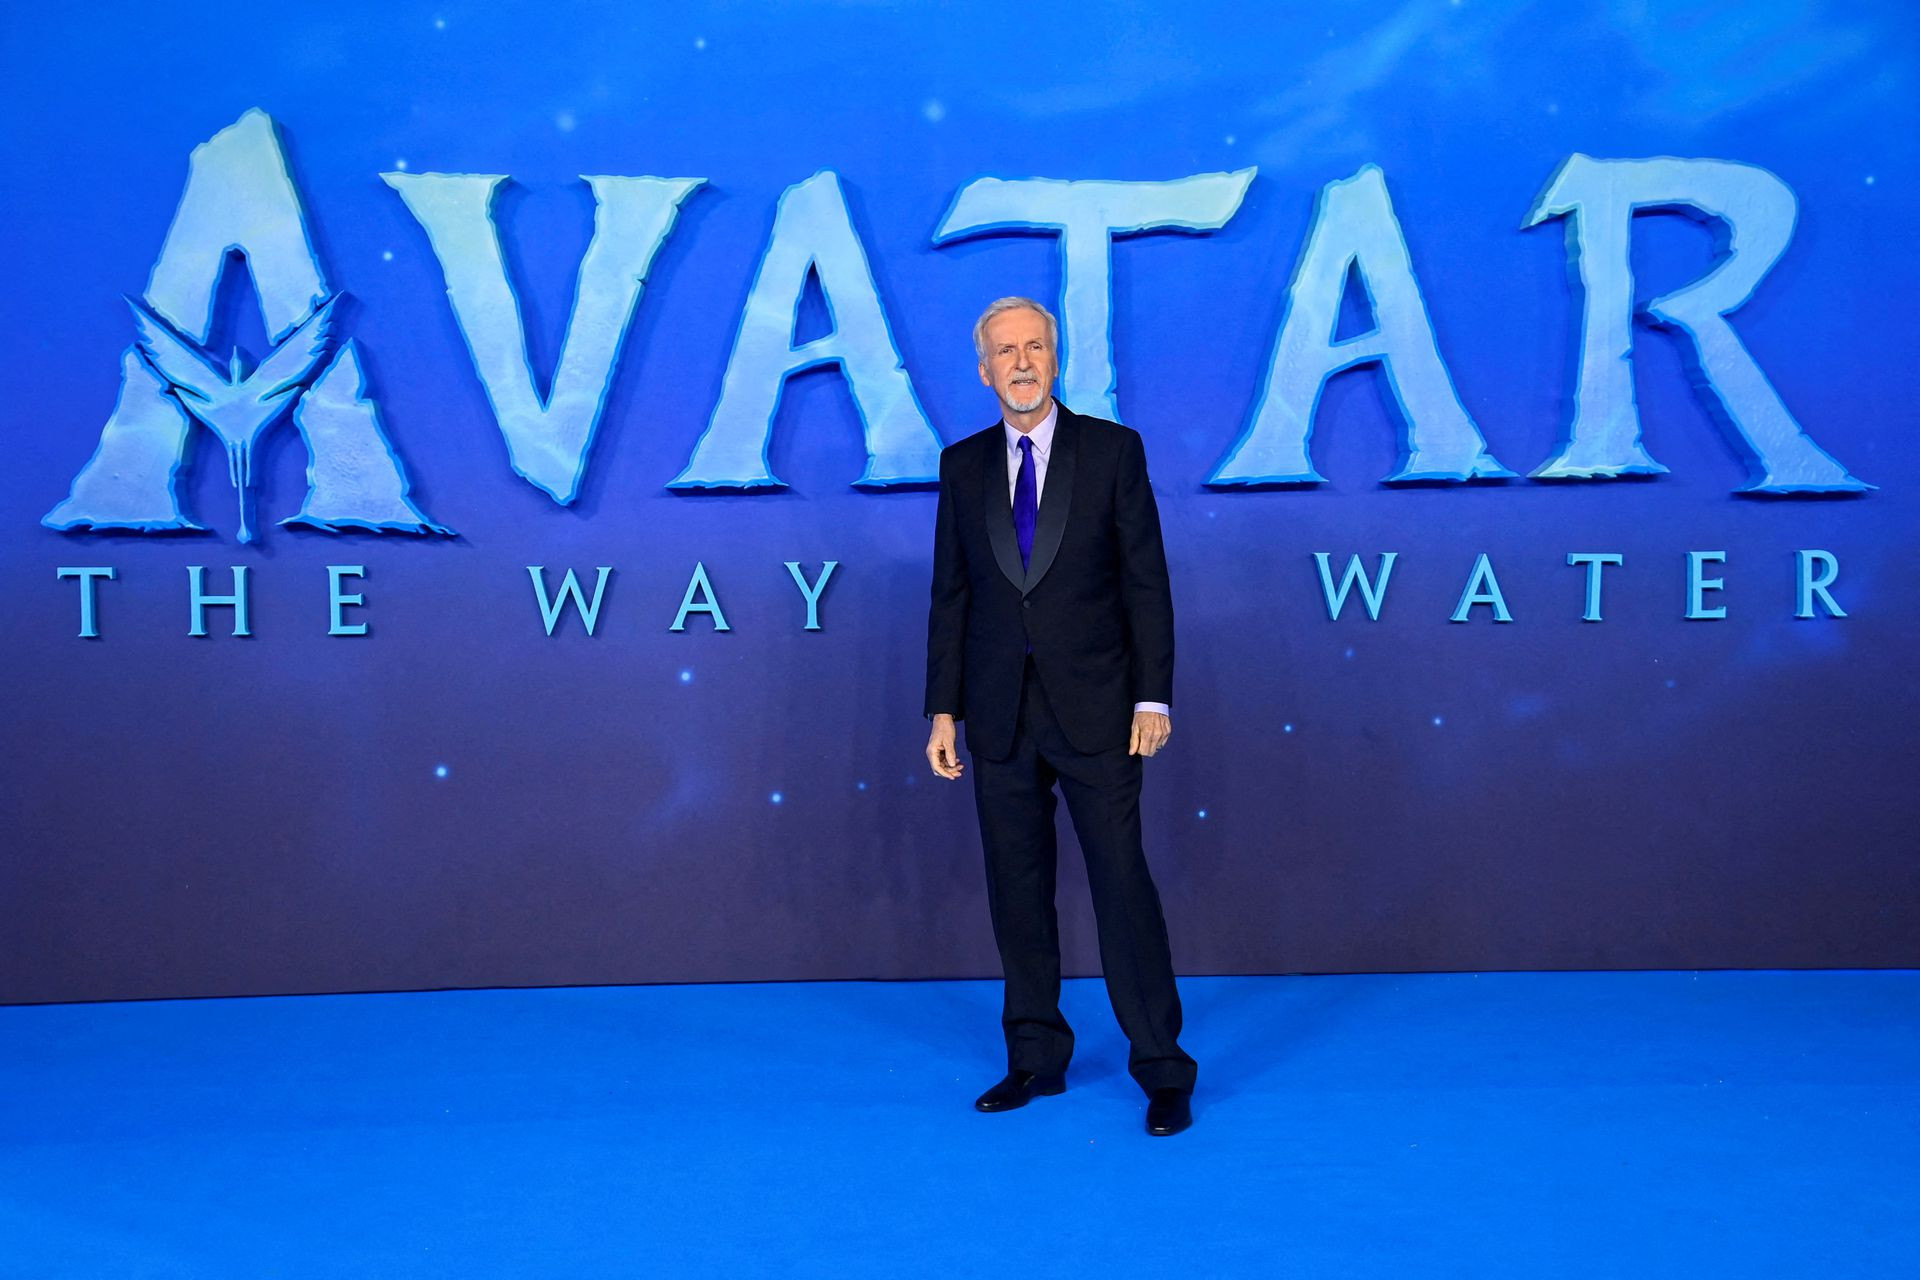 Doanh thu ngoài sức tưởng tượng của 'Avatar 2' sau 3 ngày càn quét toàn cầu